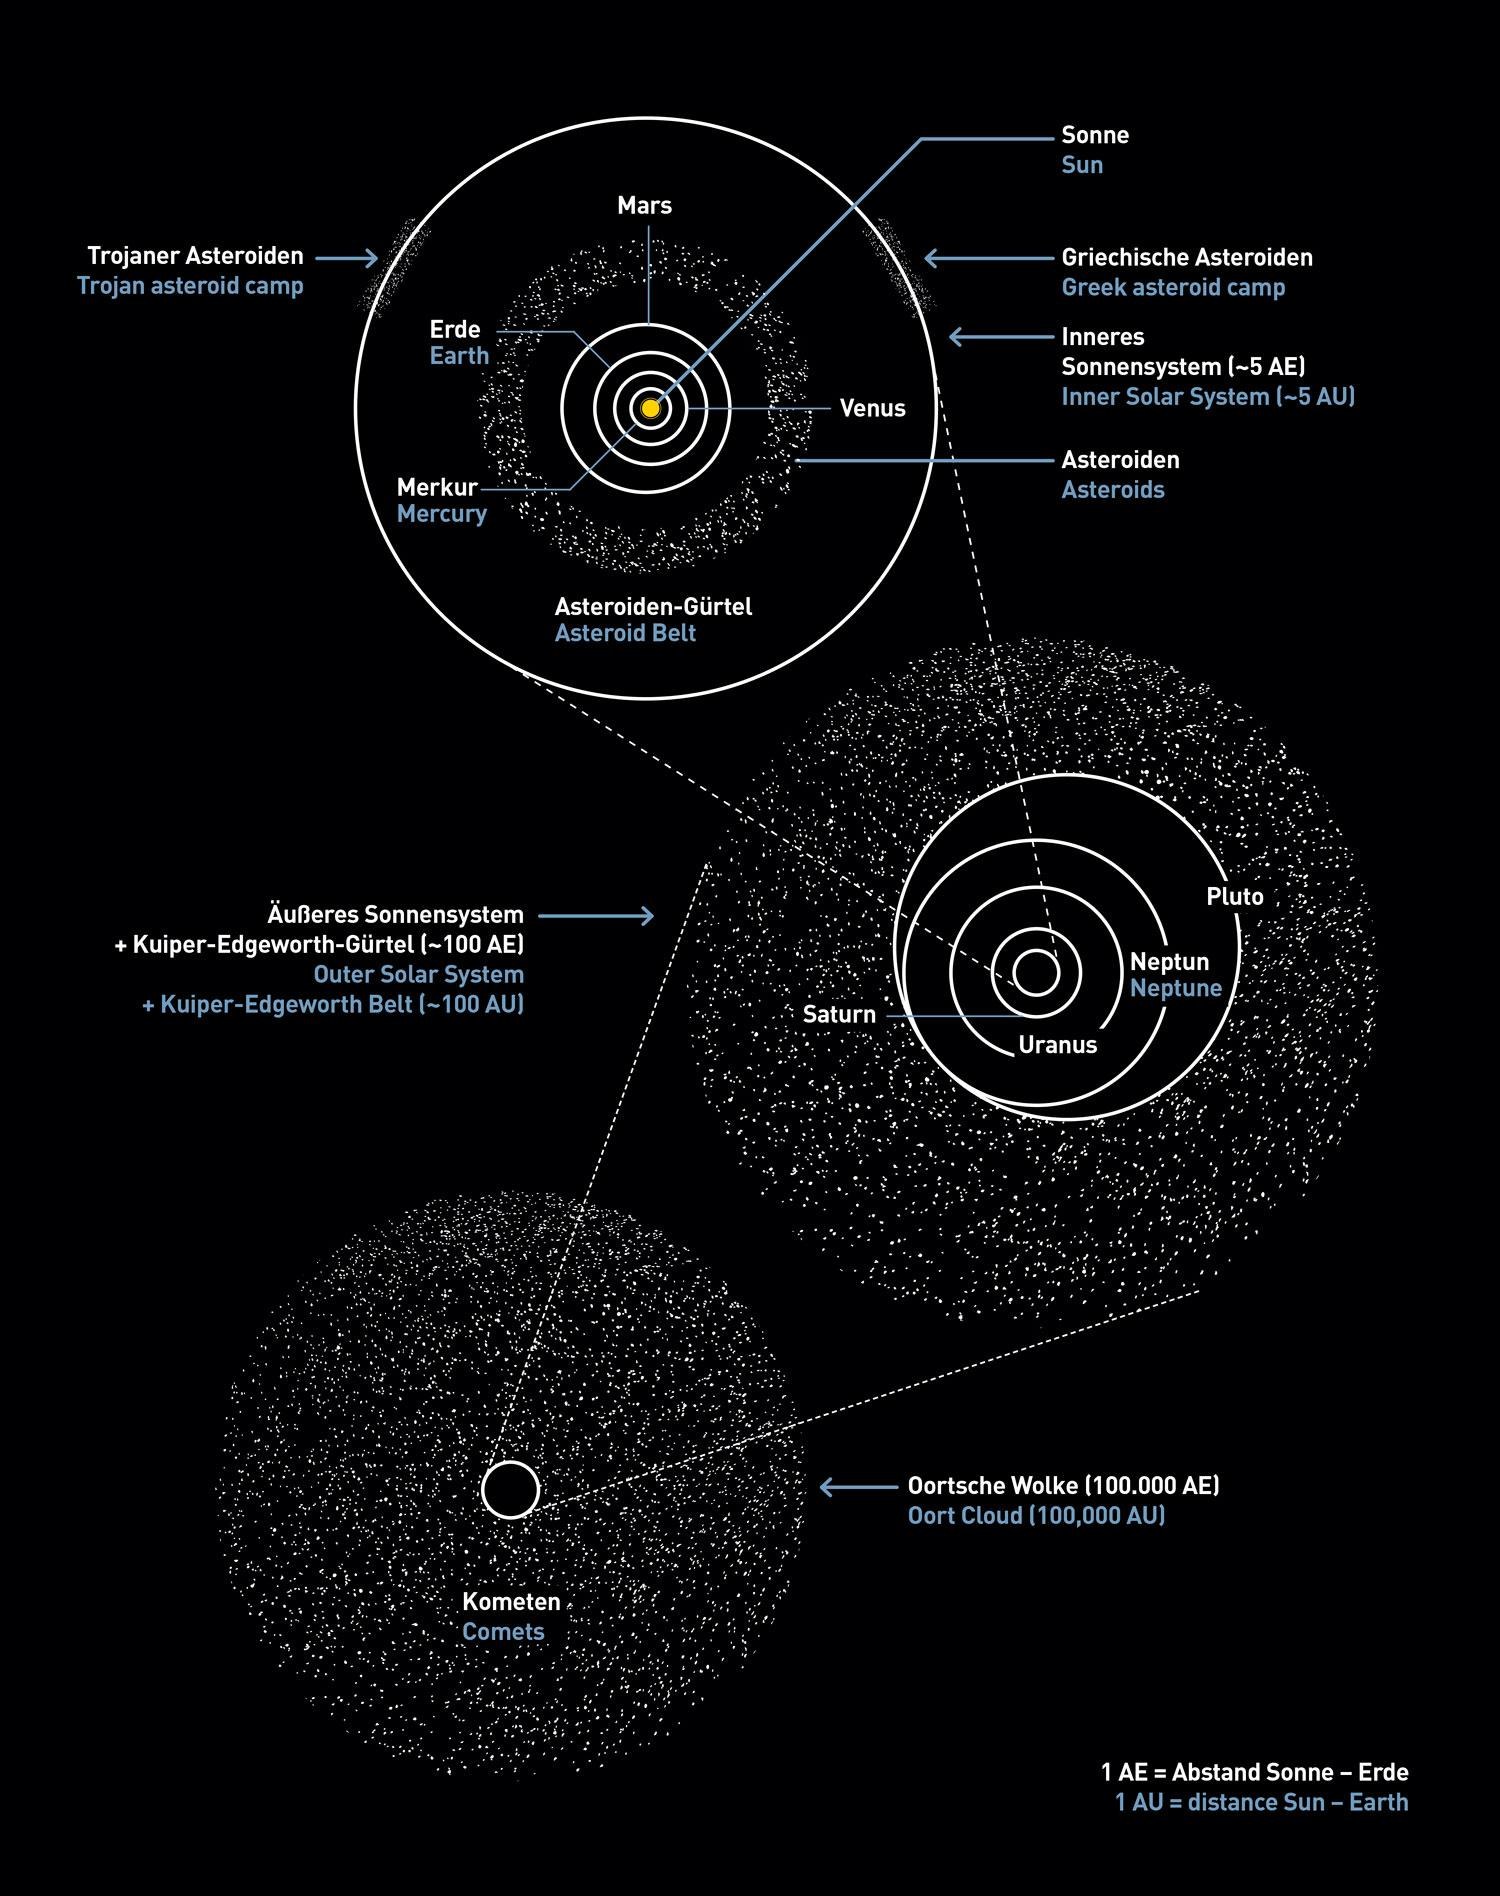 Auf Bahnen zwischen Mars und Jupiter befinden sich die meisten Asteroiden im Sonnensystem